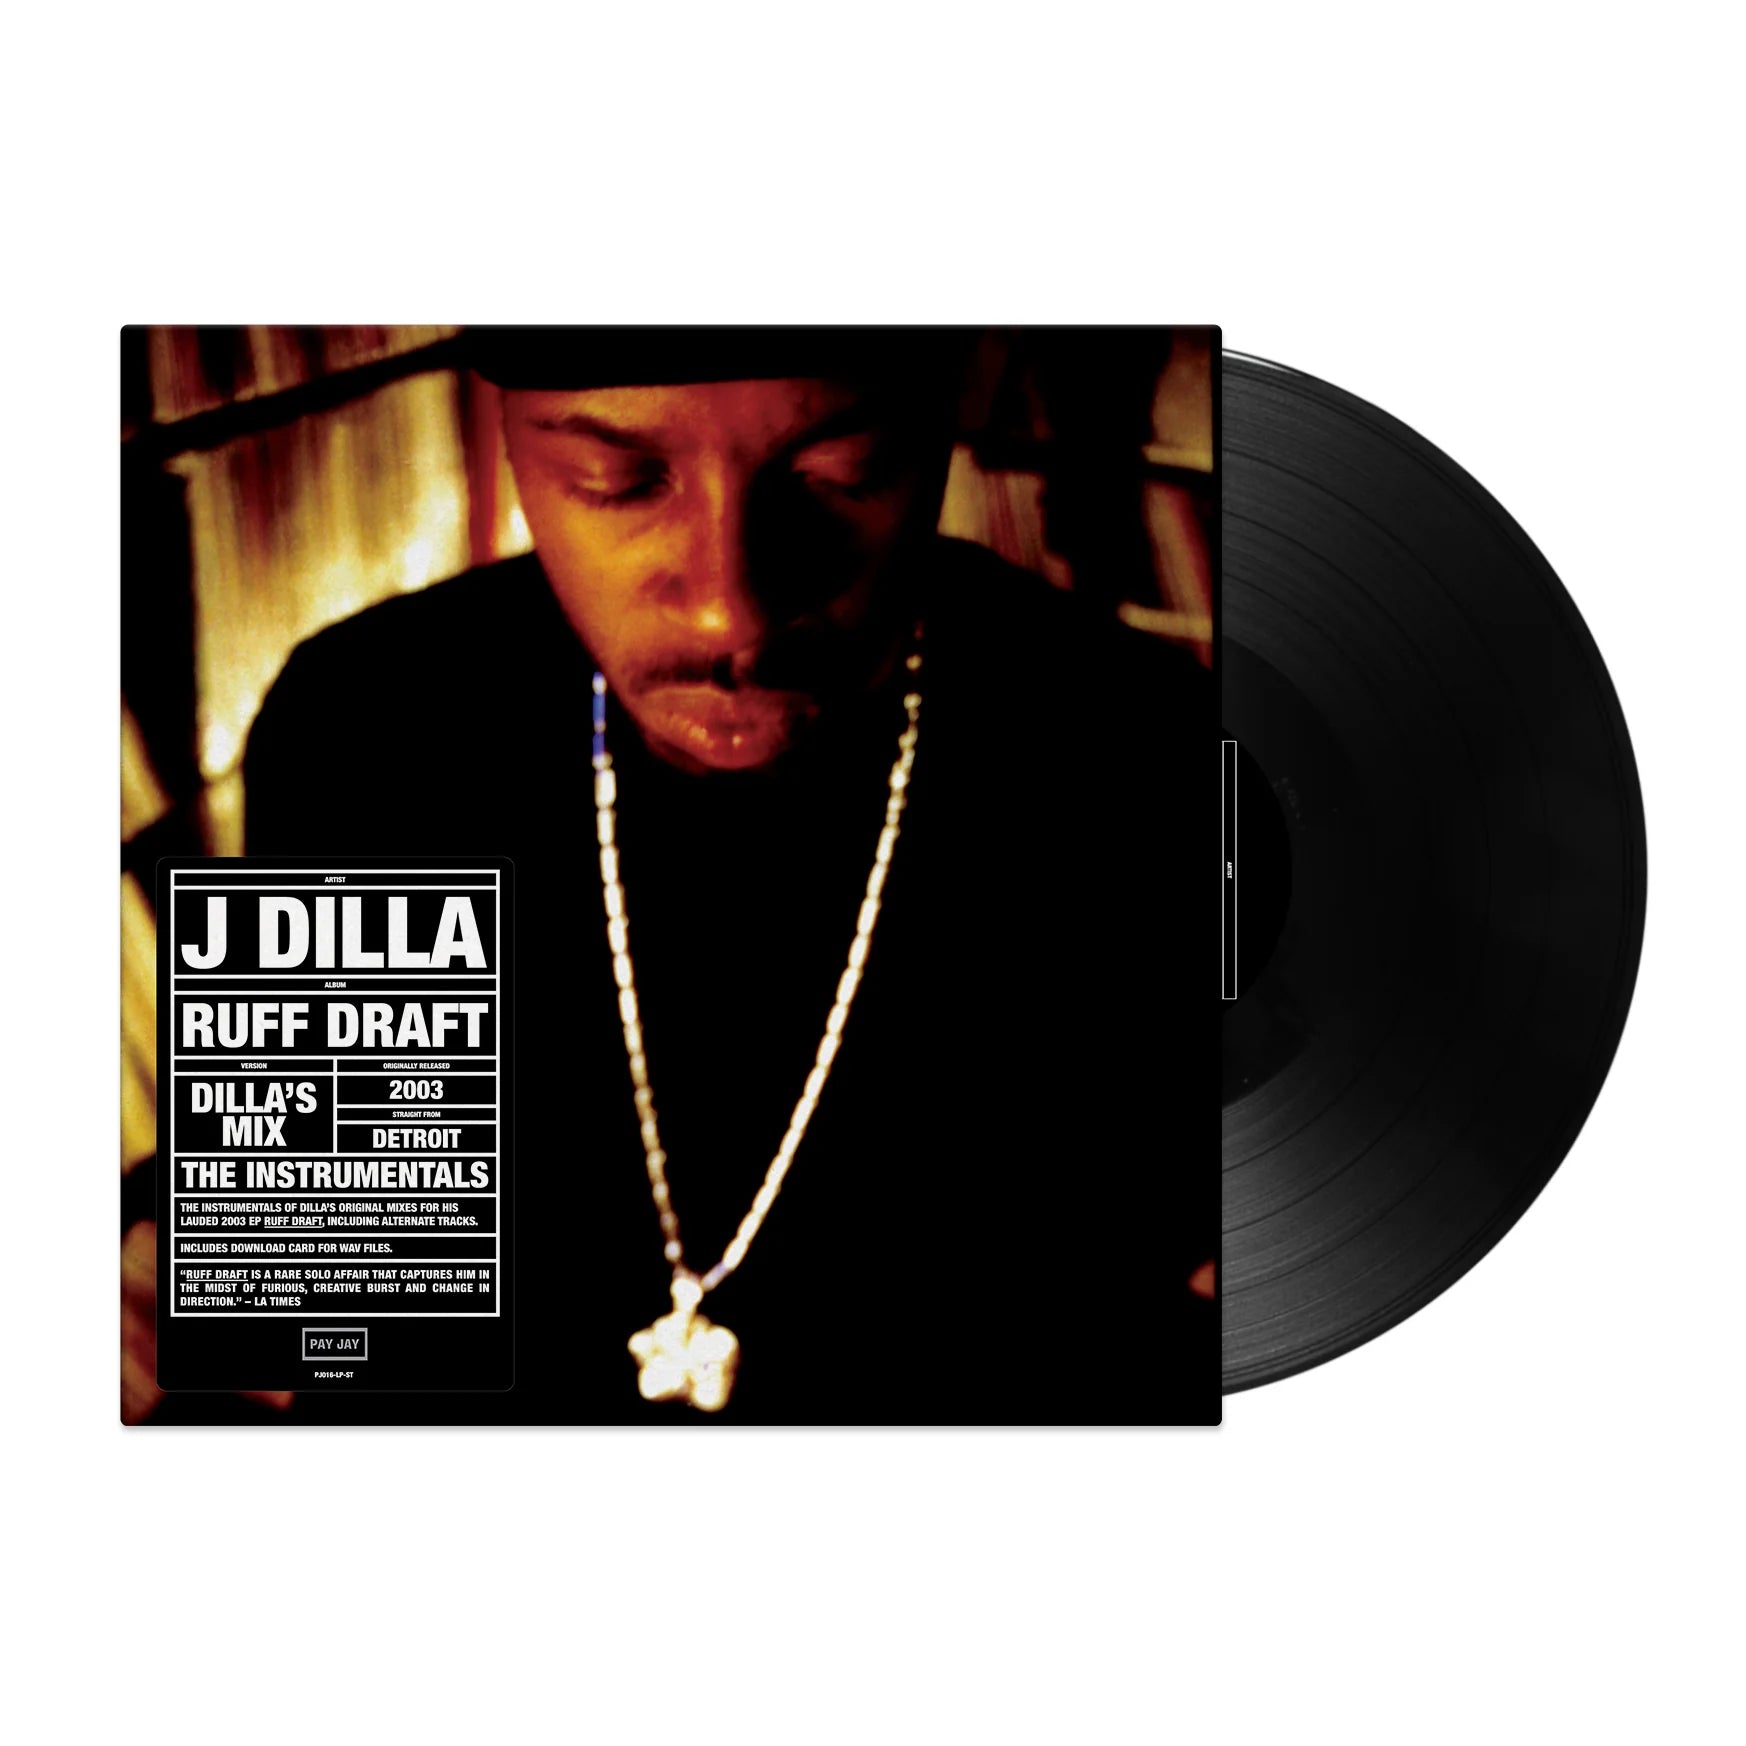 J Dilla - Ruff Draft - Dilla’s Mix: Vinyl LP